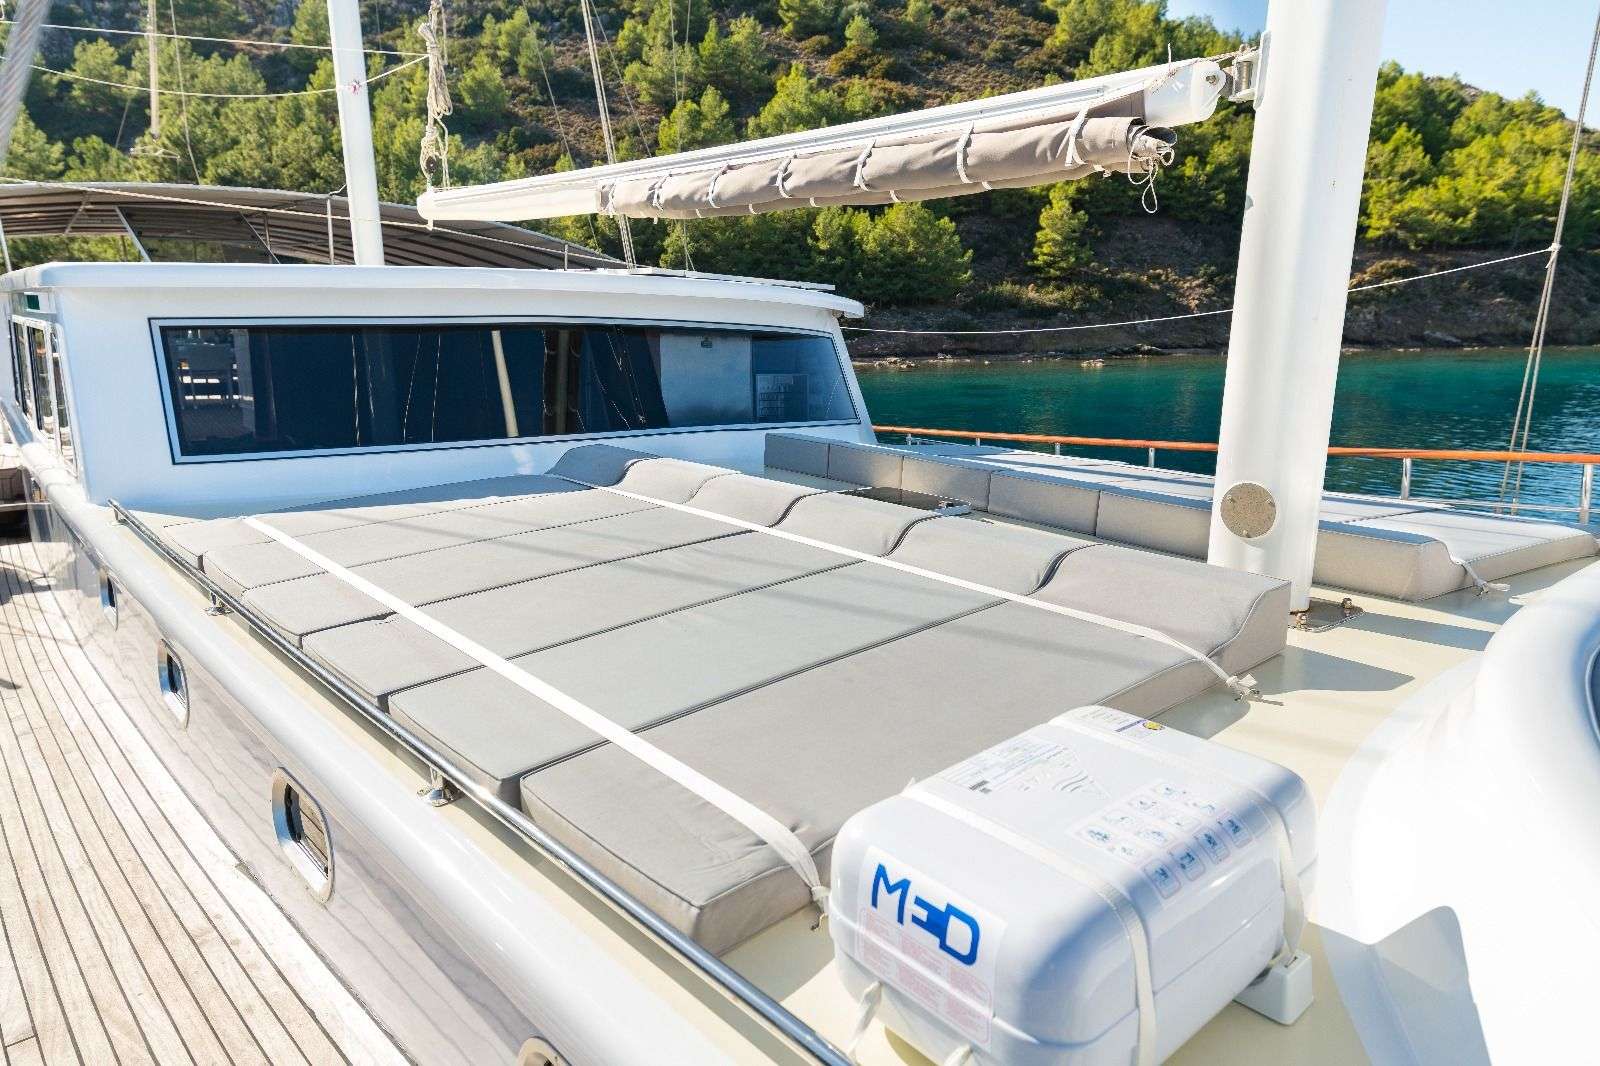 koray ege - Superyacht charter worldwide & Boat hire in Greece & Turkey 3